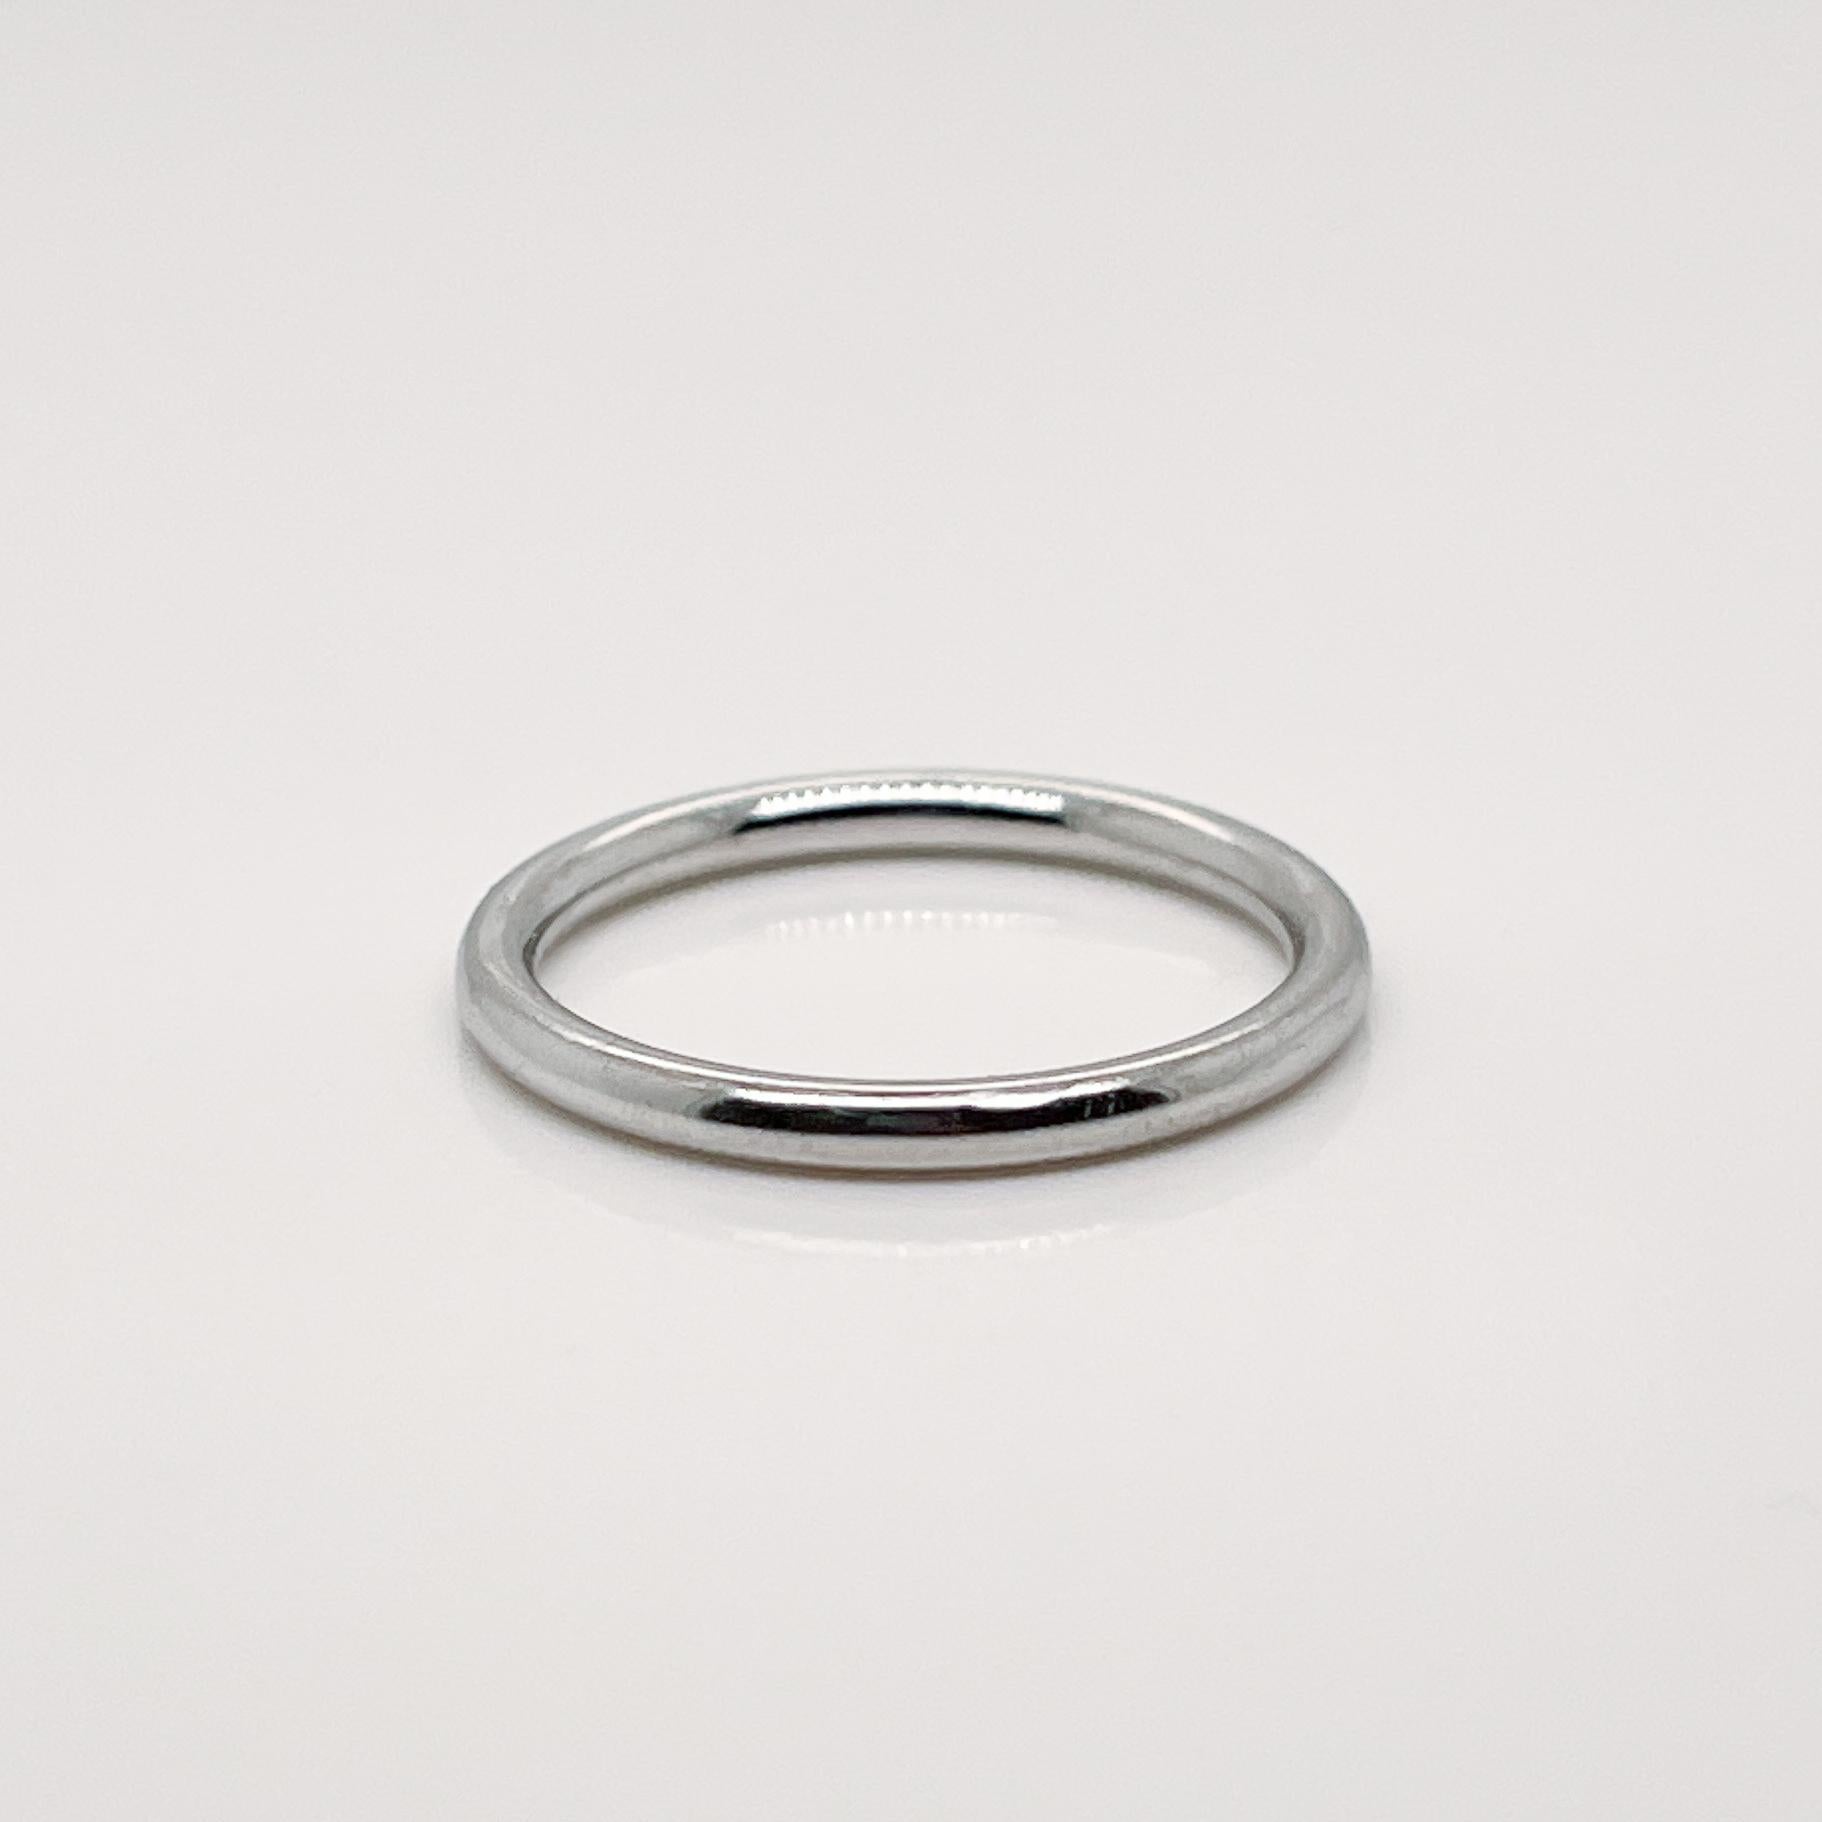 Ein sehr schöner Ring von Tiffany & Co.

In Platin.

Einfach ein wunderschöner Ring von Tiffany & Co.!

Datum:
20. Jahrhundert

Allgemeiner Zustand:
Es ist in insgesamt gut, wie abgebildet, verwendet Nachlass Zustand mit einigen sehr feinen und